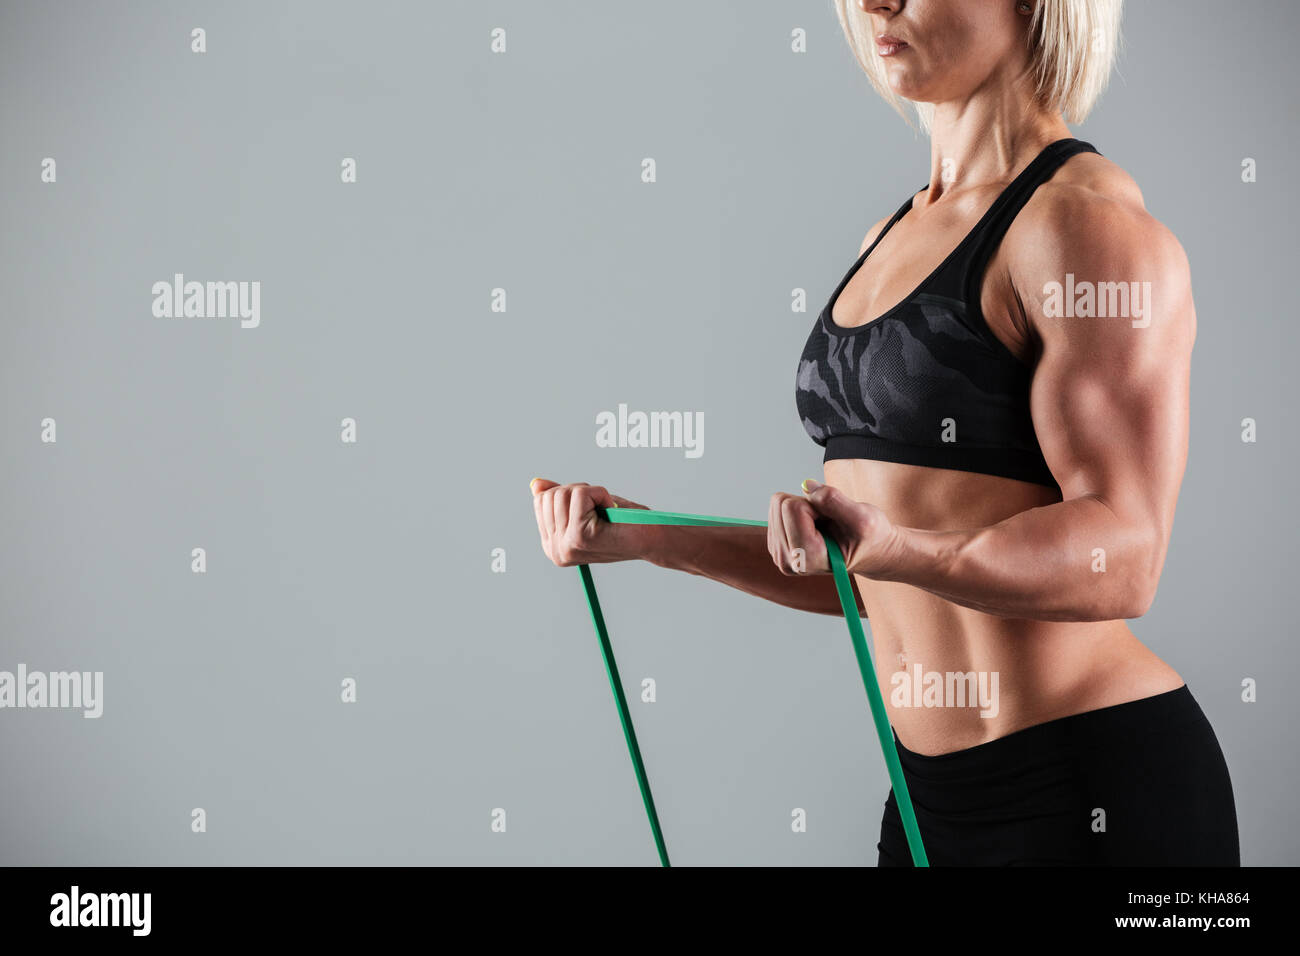 Foto ritagliata di bodybuilder femminile stretching con gomma elastica, isolati su sfondo bianco Foto Stock